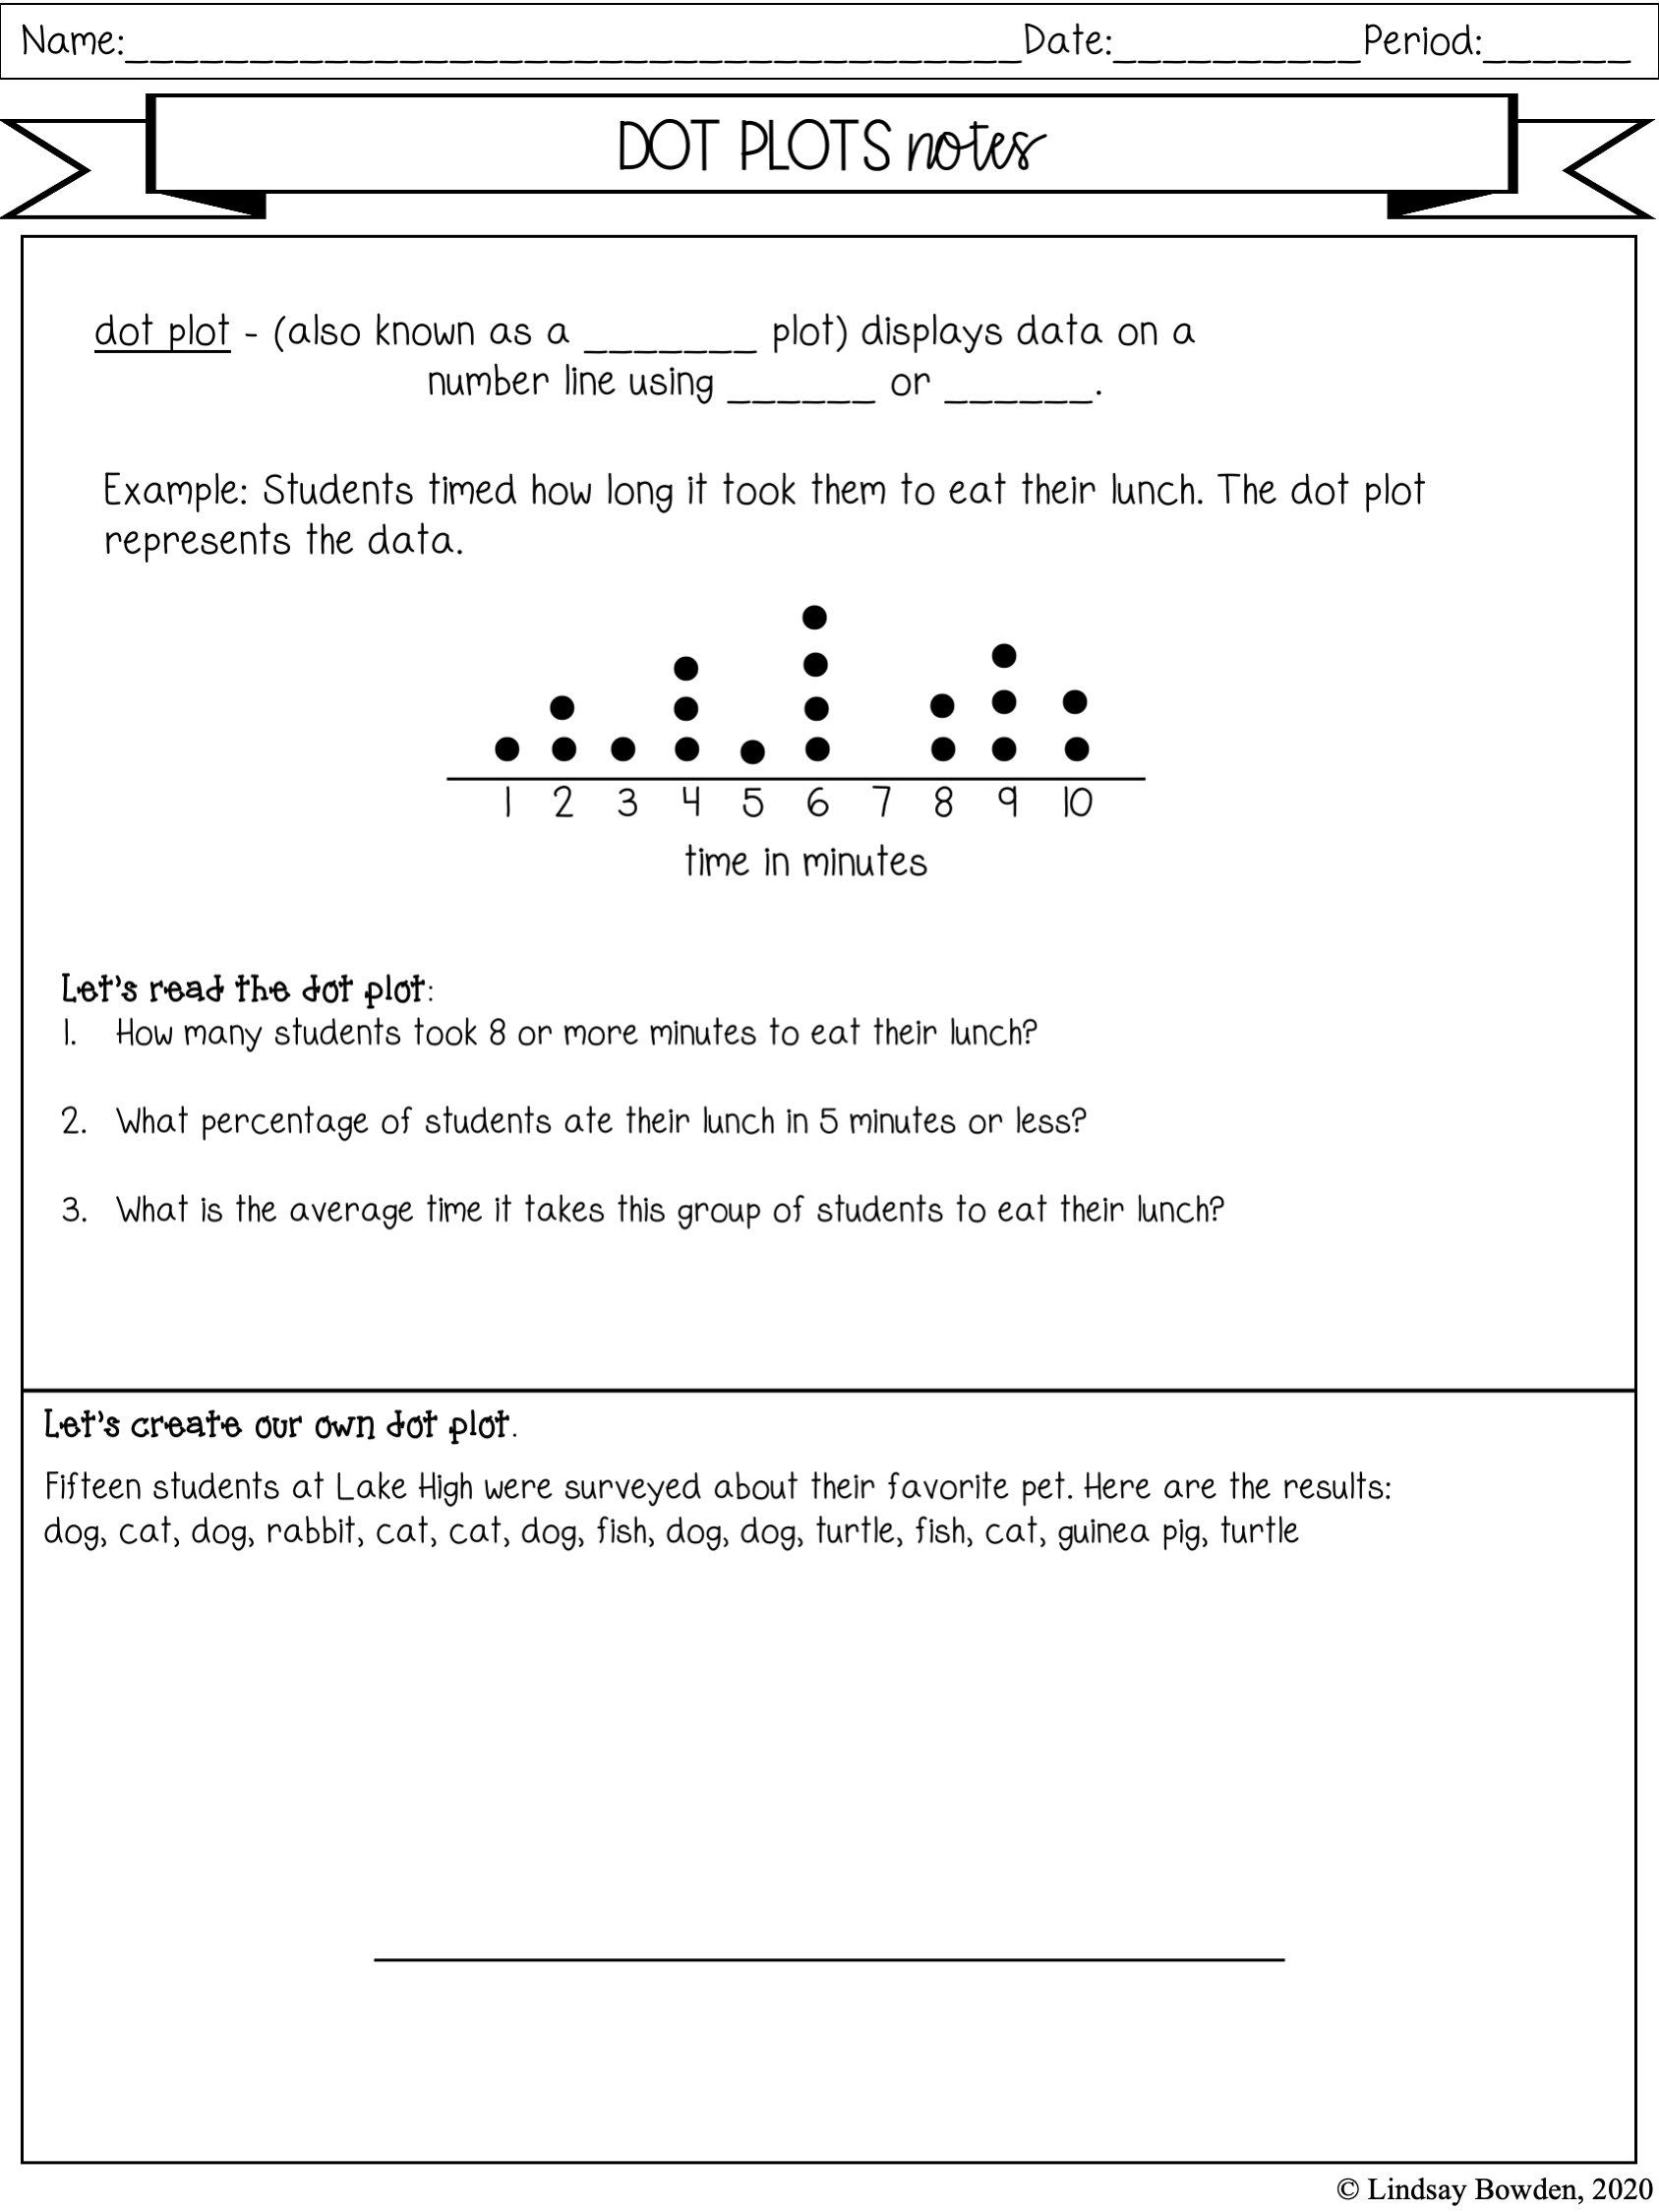 dot-plots-notes-and-worksheets-lindsay-bowden